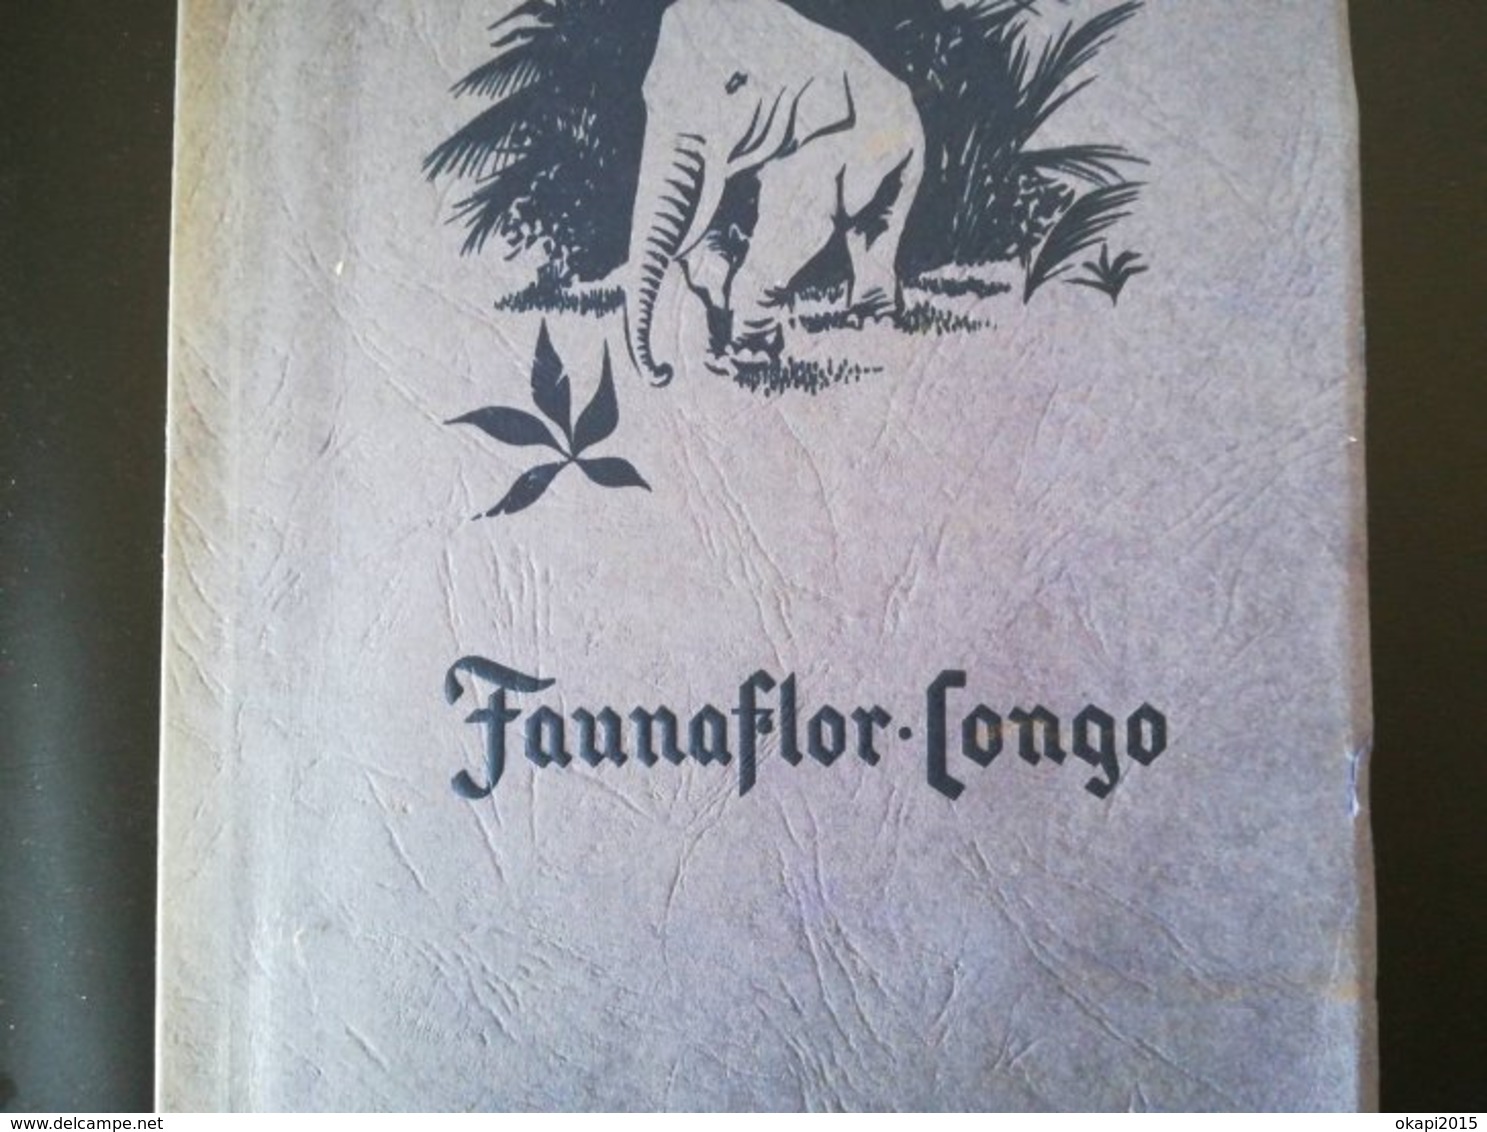 Carte Congo Belge ethnographique +  livre "Faunaflor Congo" complété vieux papiers colonie Belgique